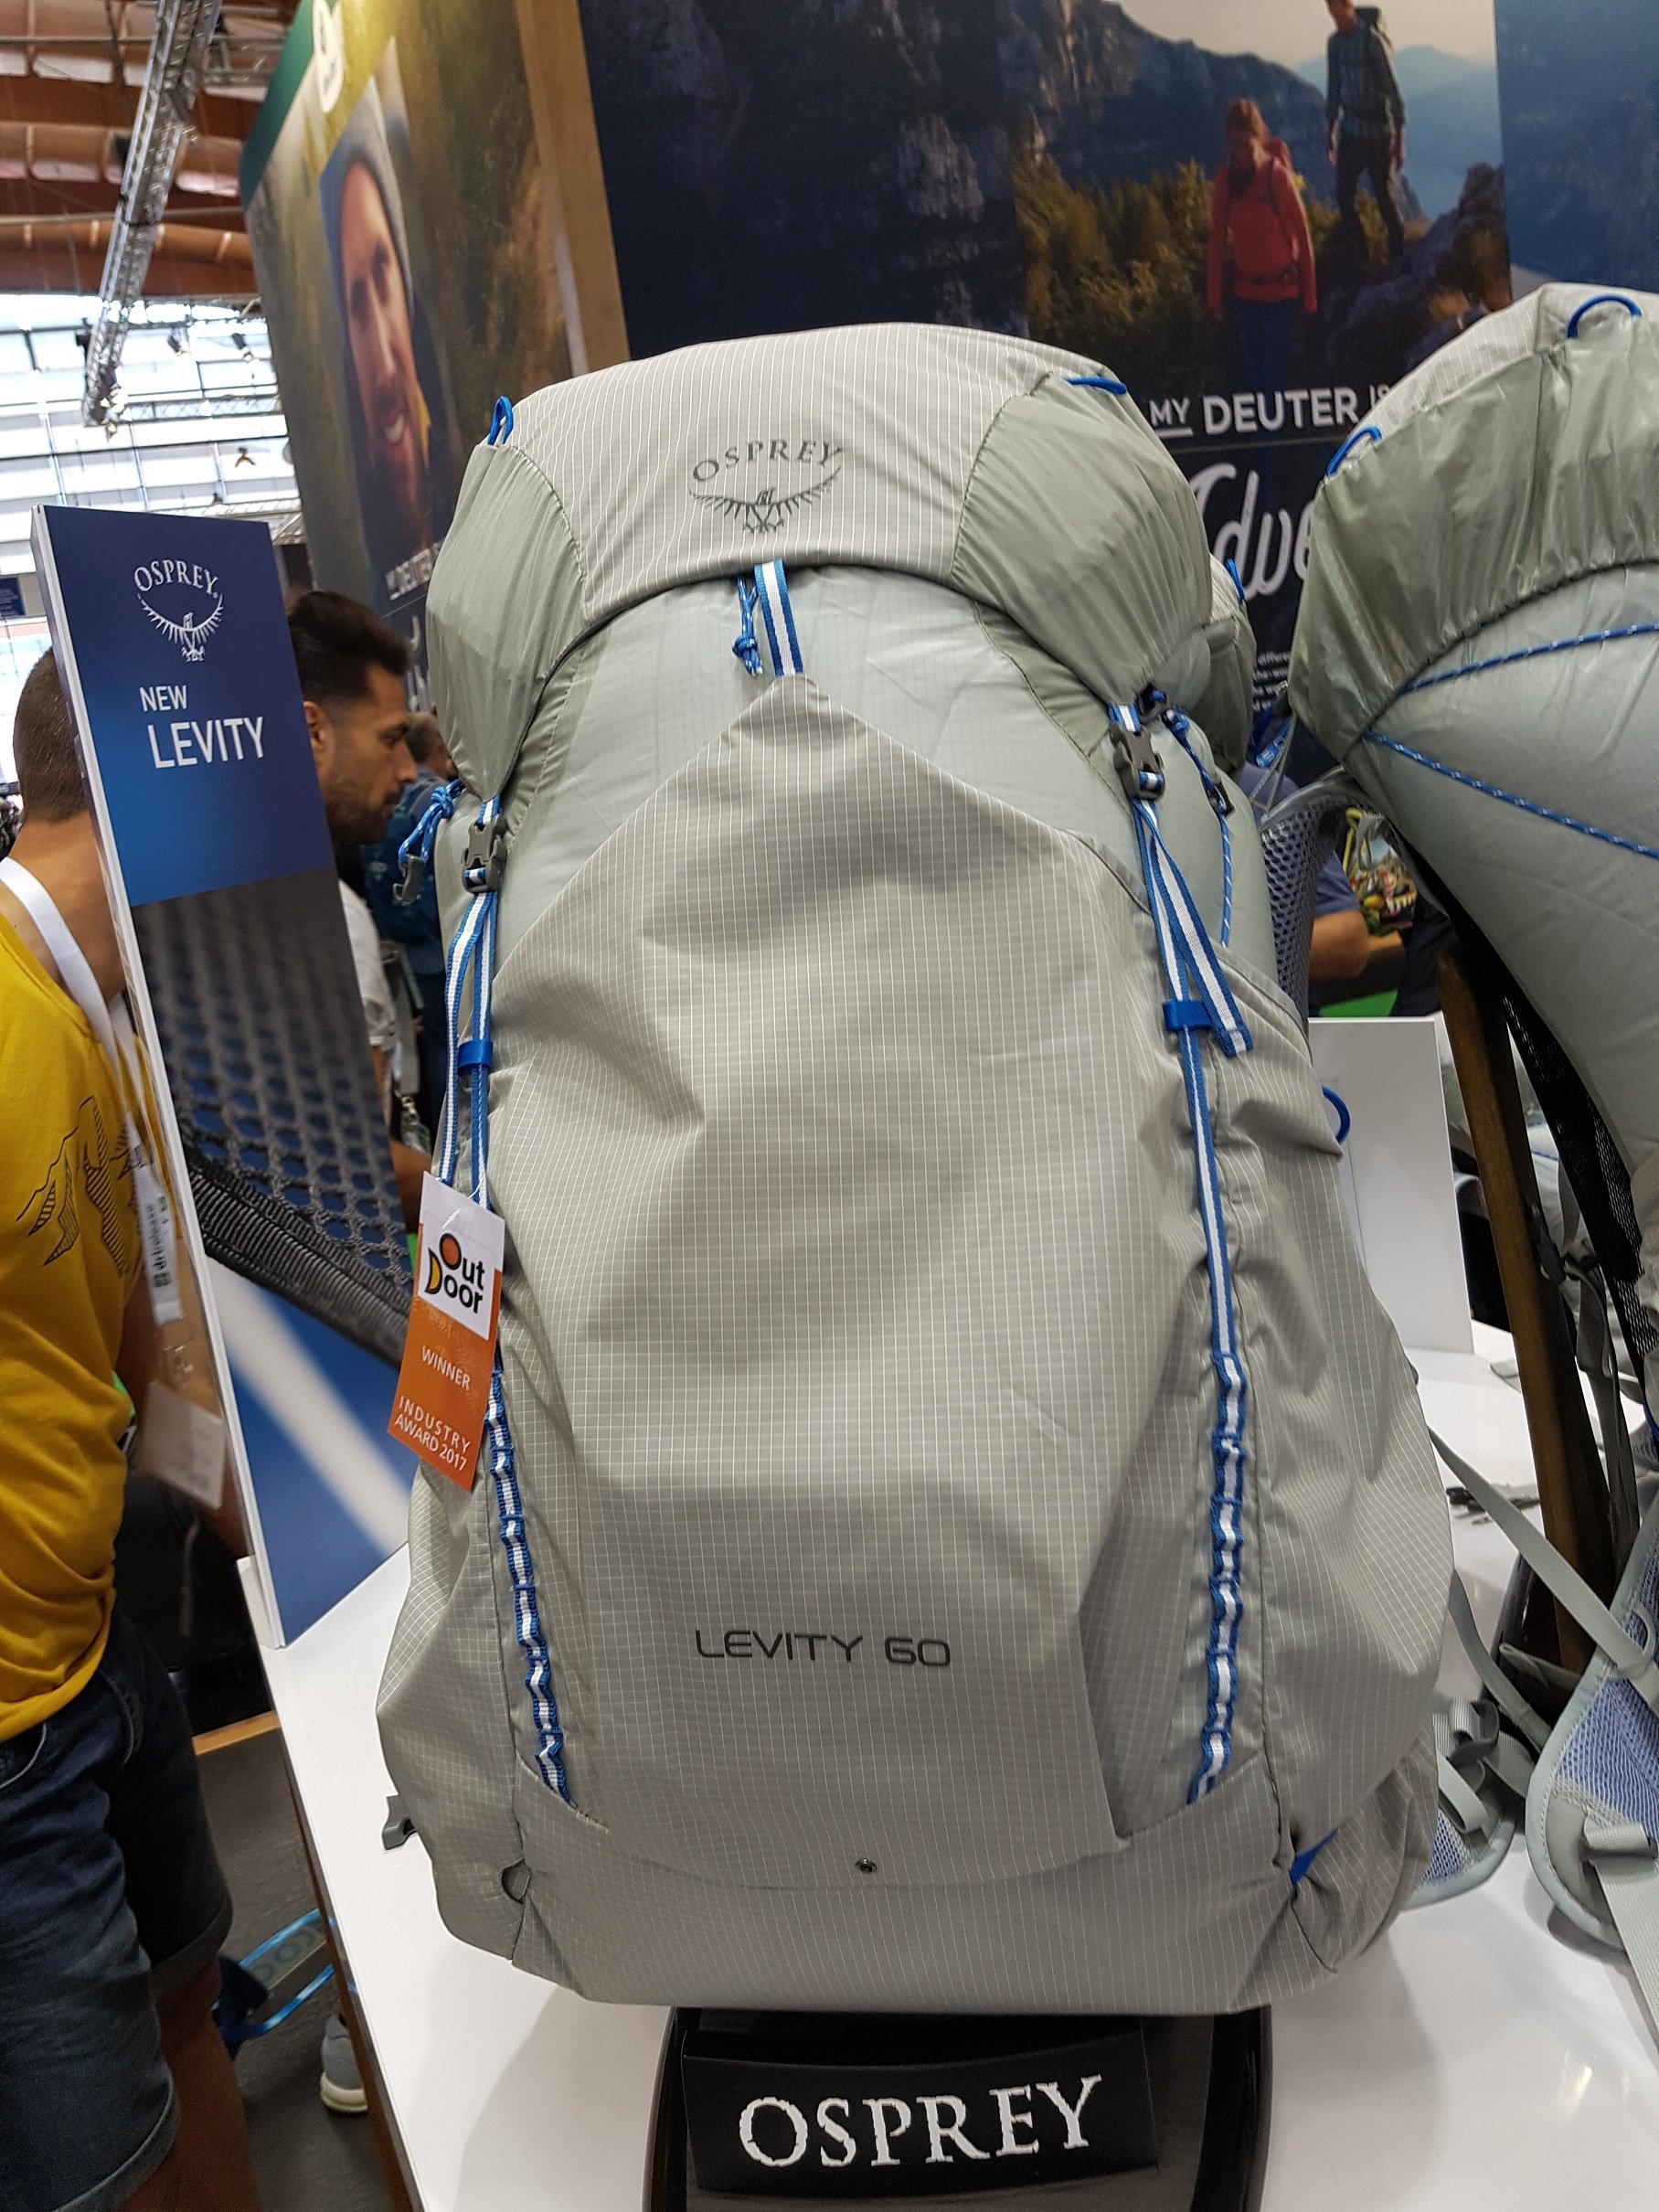 Levity 60 Osprey taske kåret til den bedste taske Friedrichshafen -